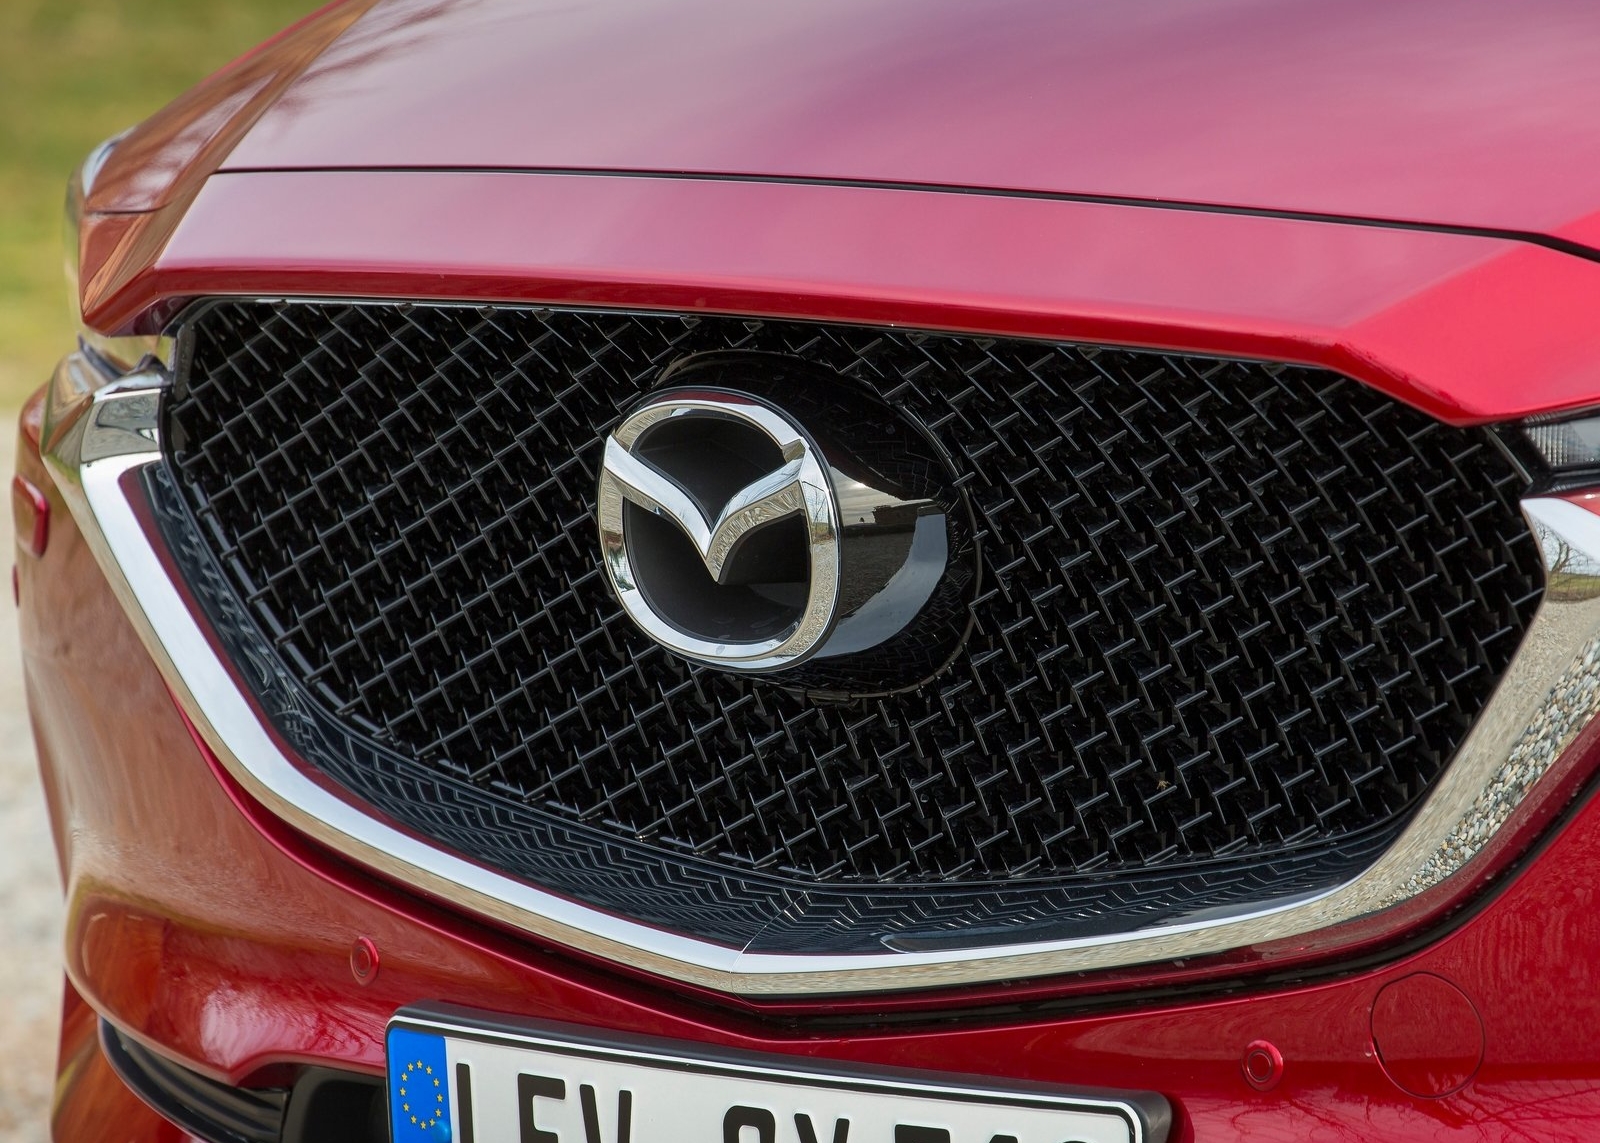 Aannemer converteerbaar Met pensioen gaan Hoe betrouwbaar is Mazda volgens de Consumentenbond? - Mazda Blog